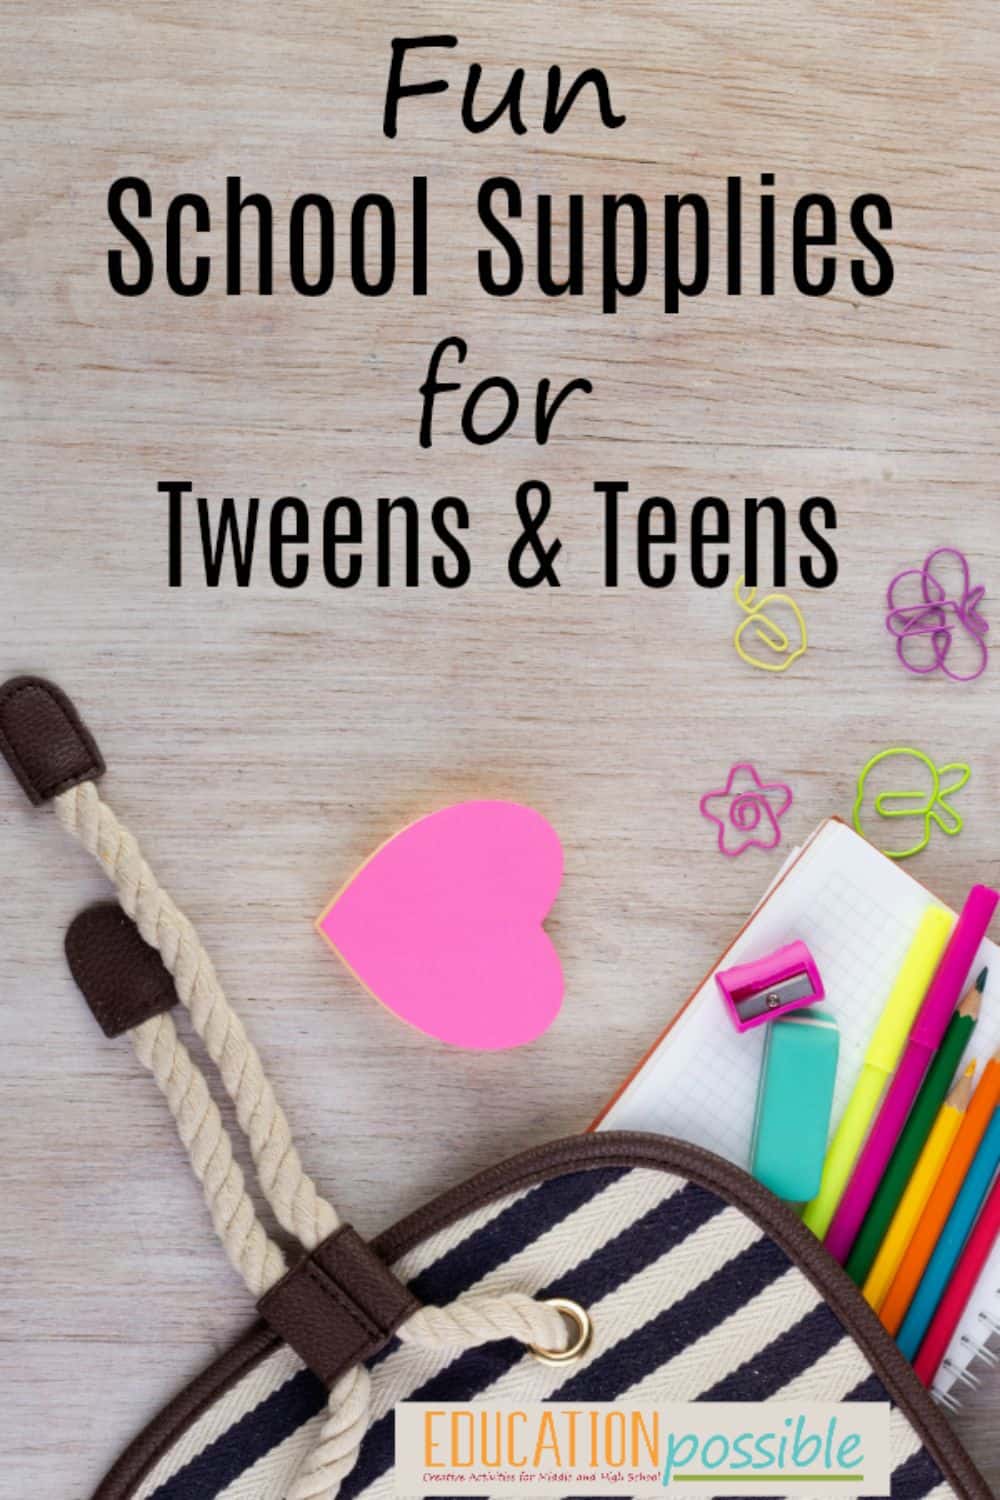 Fun School Supplies for Tweens & Teens